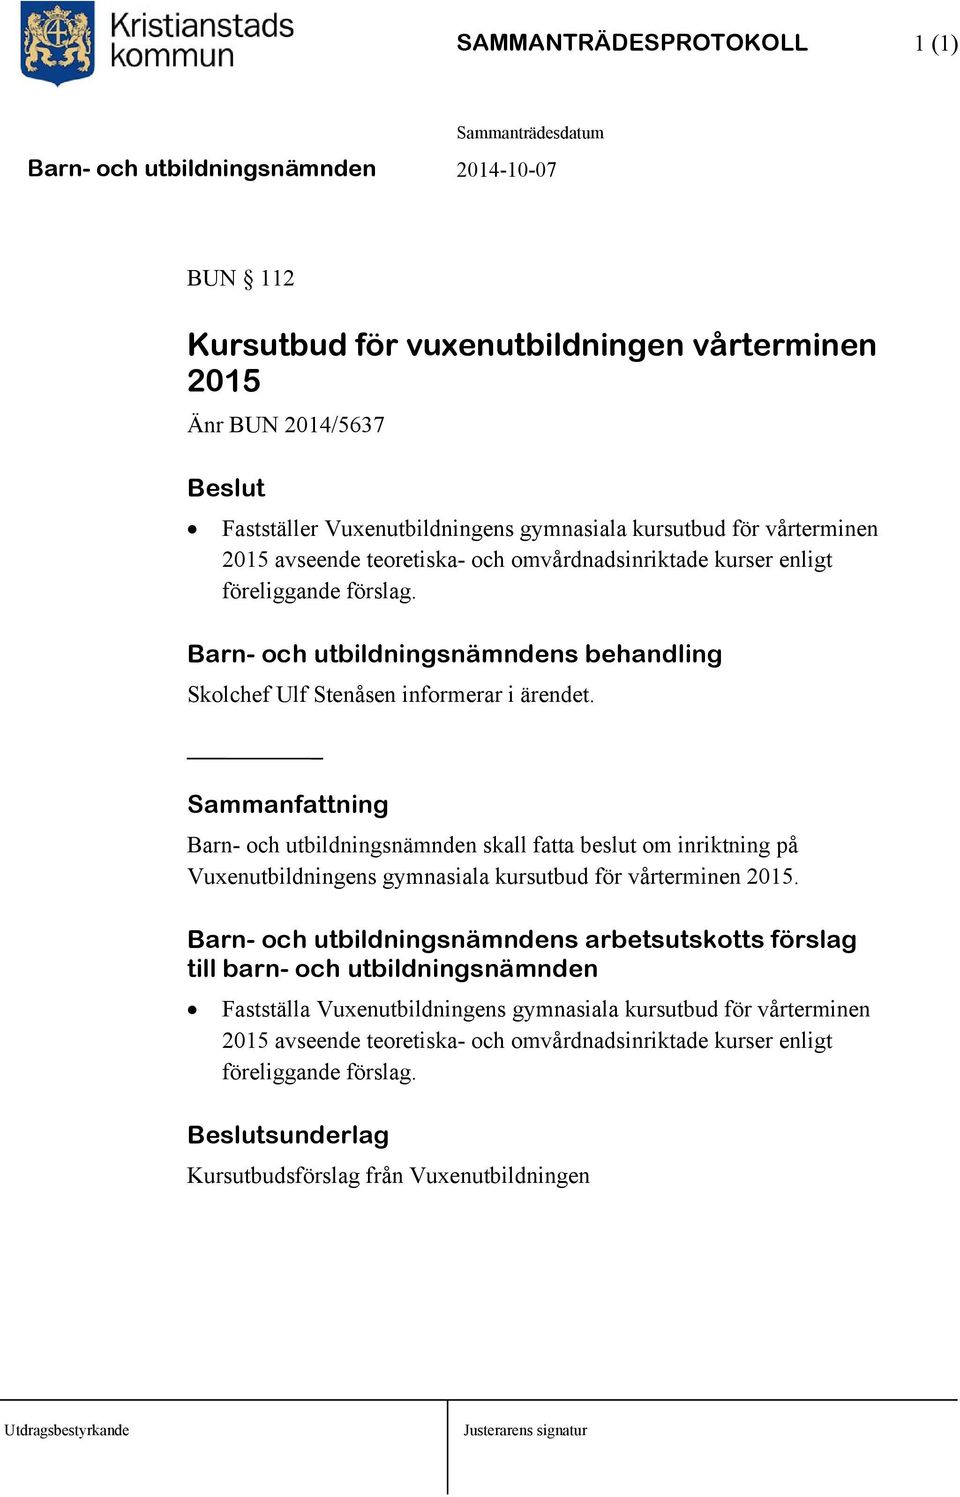 Barn- och utbildningsnämnden skall fatta beslut om inriktning på Vuxenutbildningens gymnasiala kursutbud för vårterminen 2015.